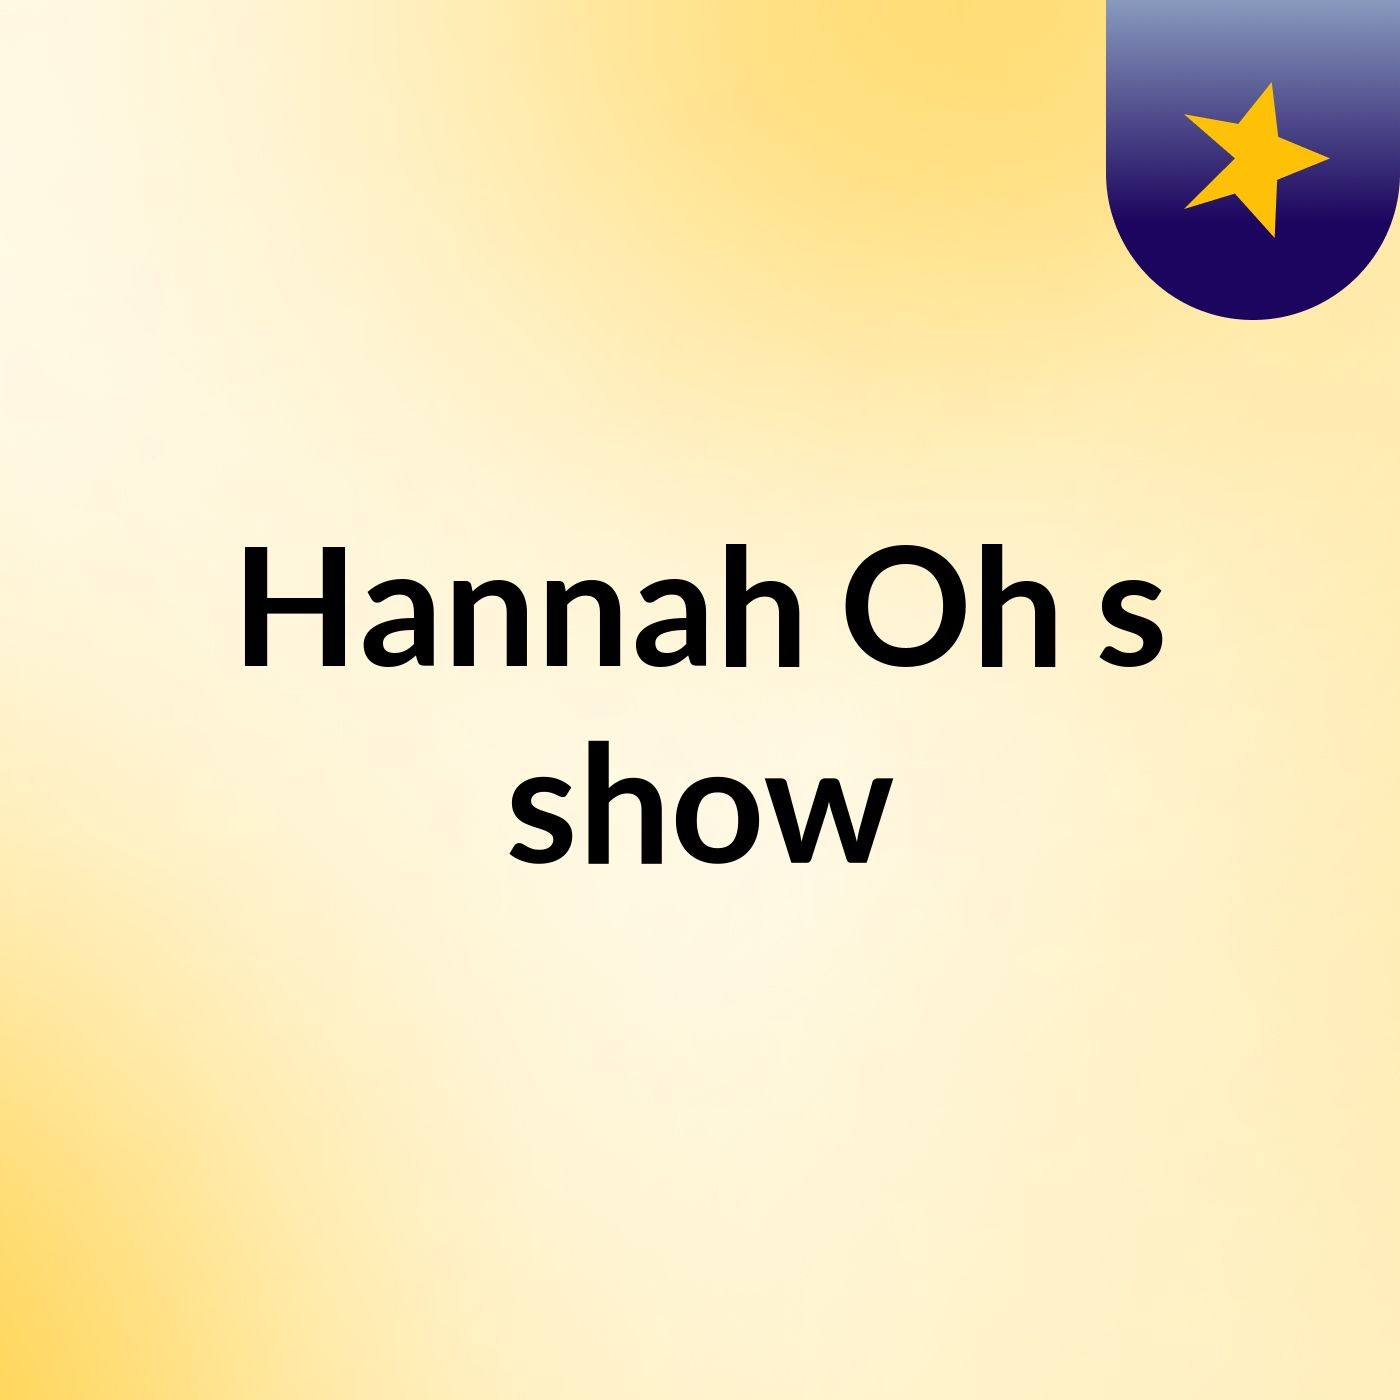 Hannah Oh's show